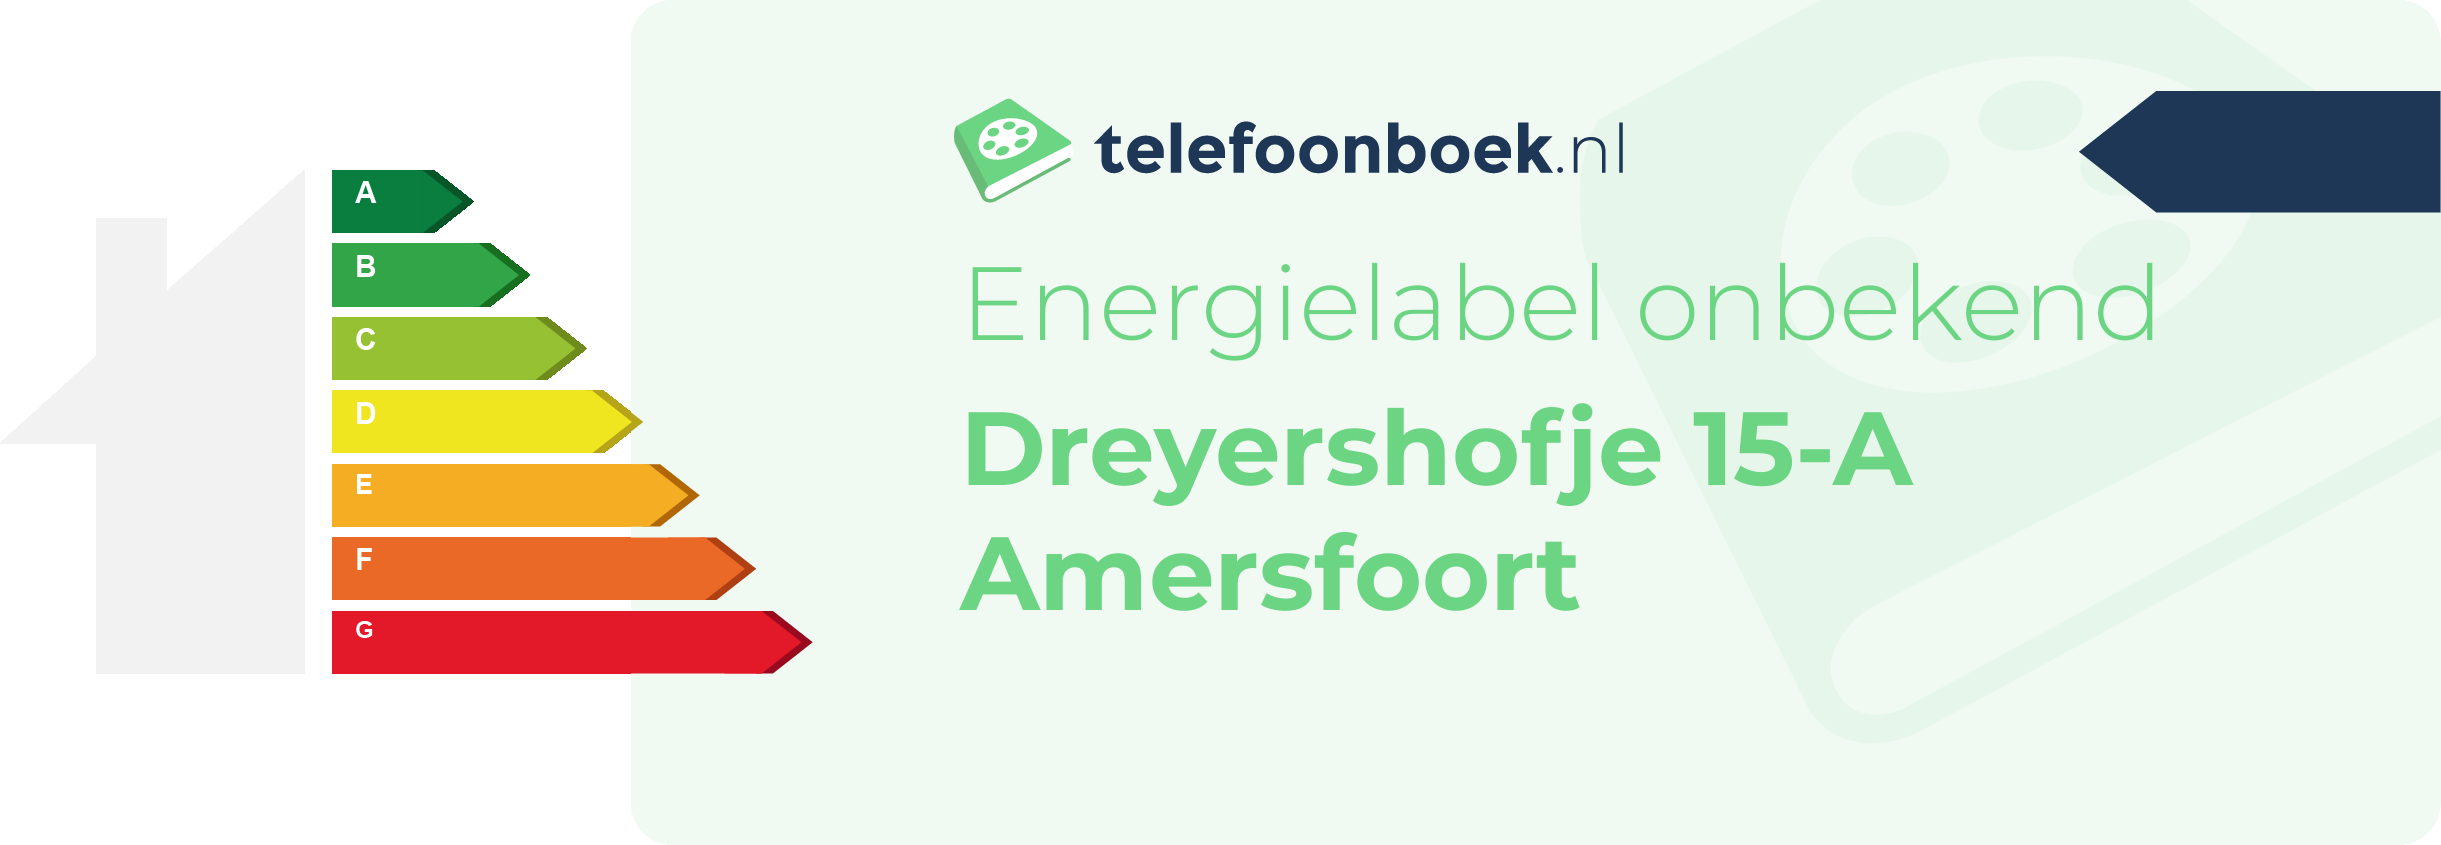 Energielabel Dreyershofje 15-A Amersfoort